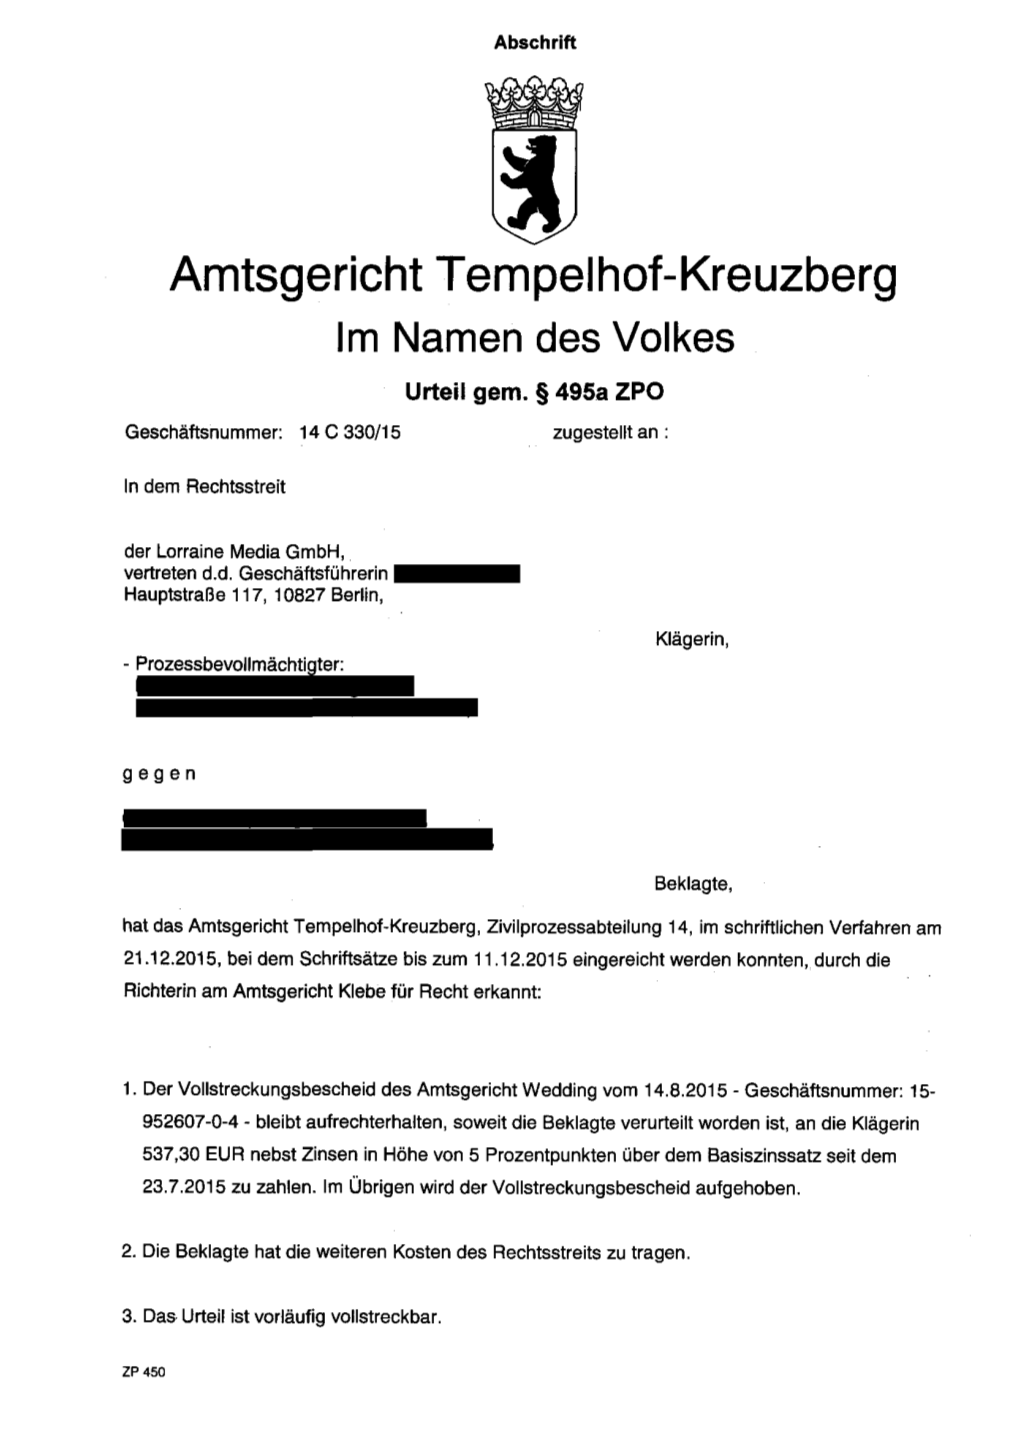 Amtsgericht Tempelhof-Kreuzberg 14 C 330-15